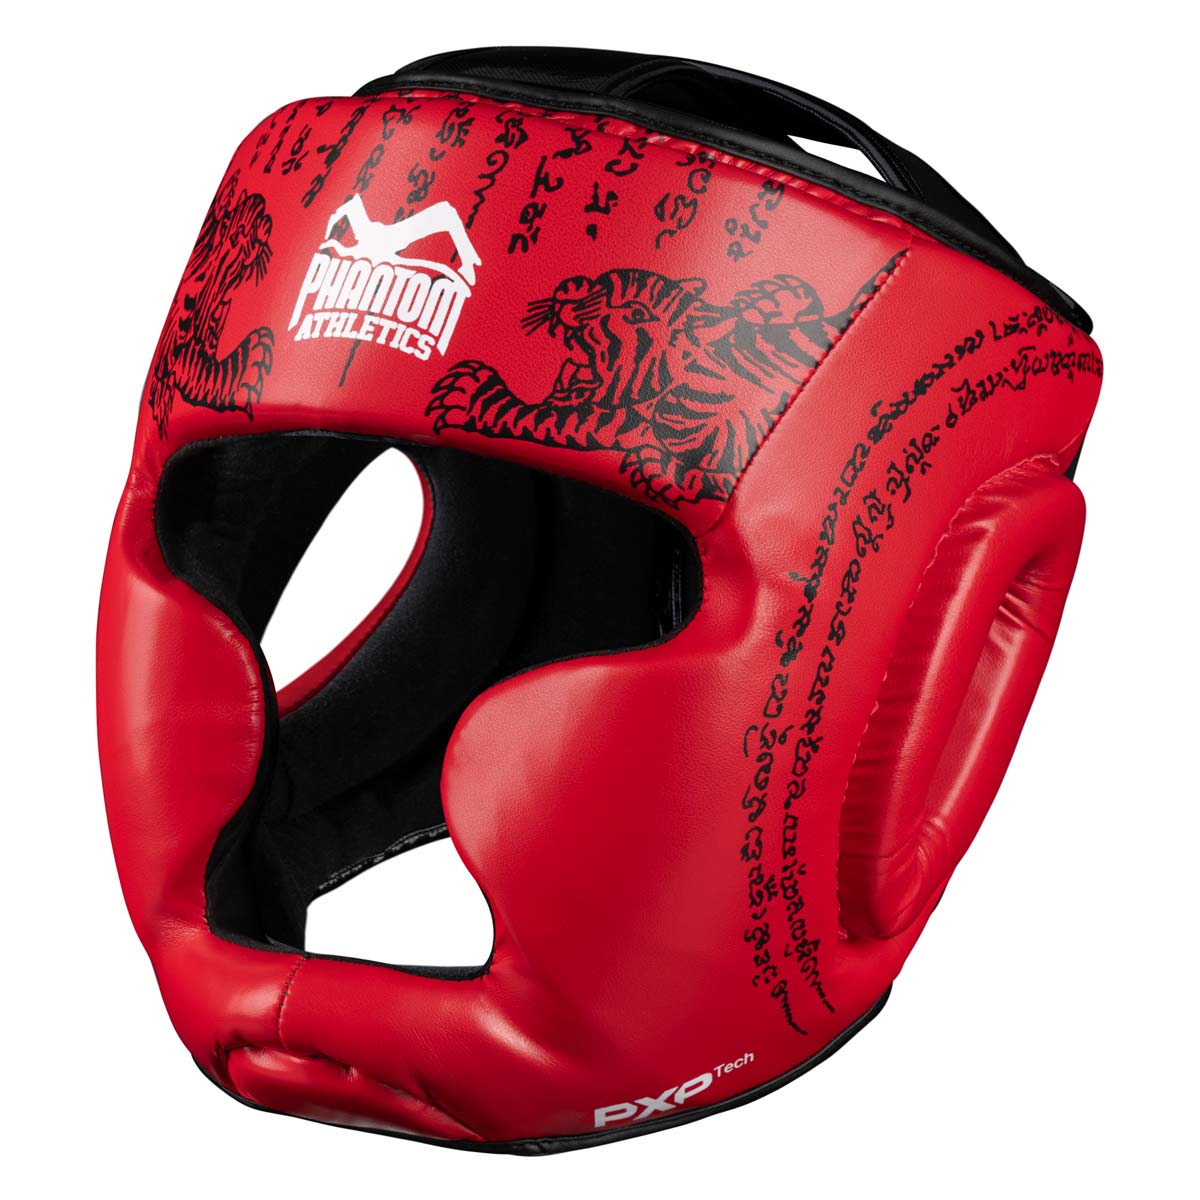 Protection de tête Phantom Muay Thai pour la boxe thaïlandaise et le sparring MMA, la compétition et l'entraînement. Dans le design traditionnel Sak Yant et la couleur rouge.